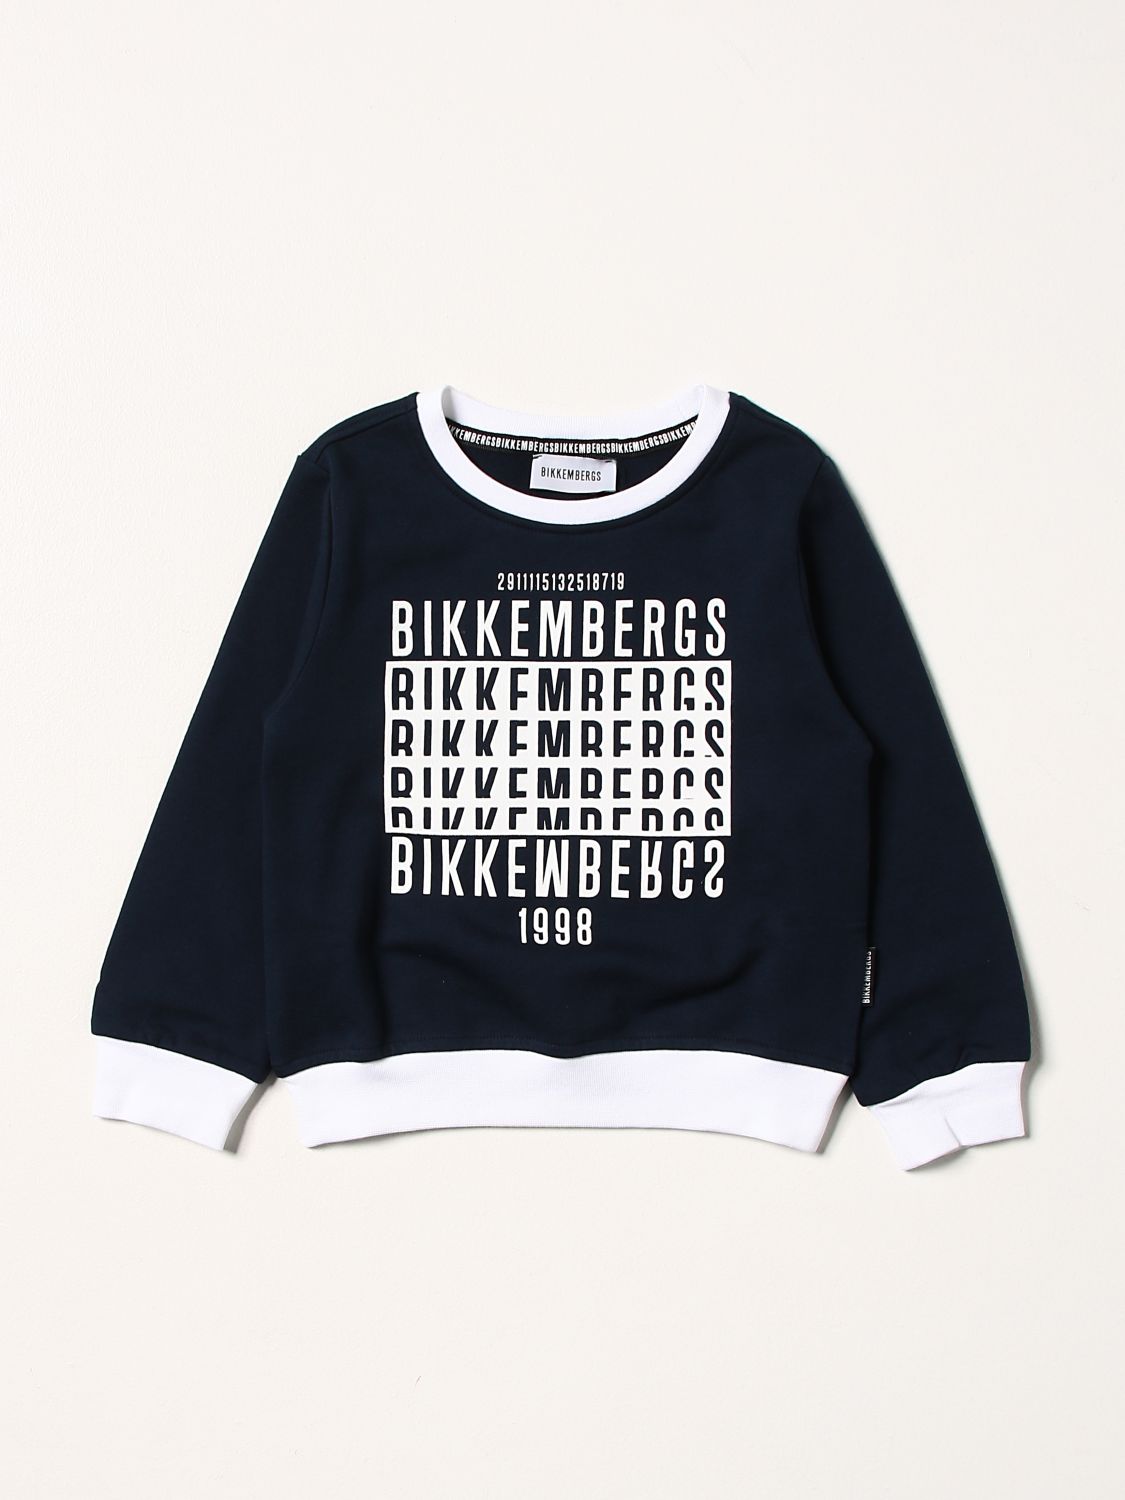 scheuren Voorgevoel Intimidatie BIKKEMBERGS: sweatshirt in cotton with prints - Navy | Bikkembergs sweater  BK0493 online on GIGLIO.COM